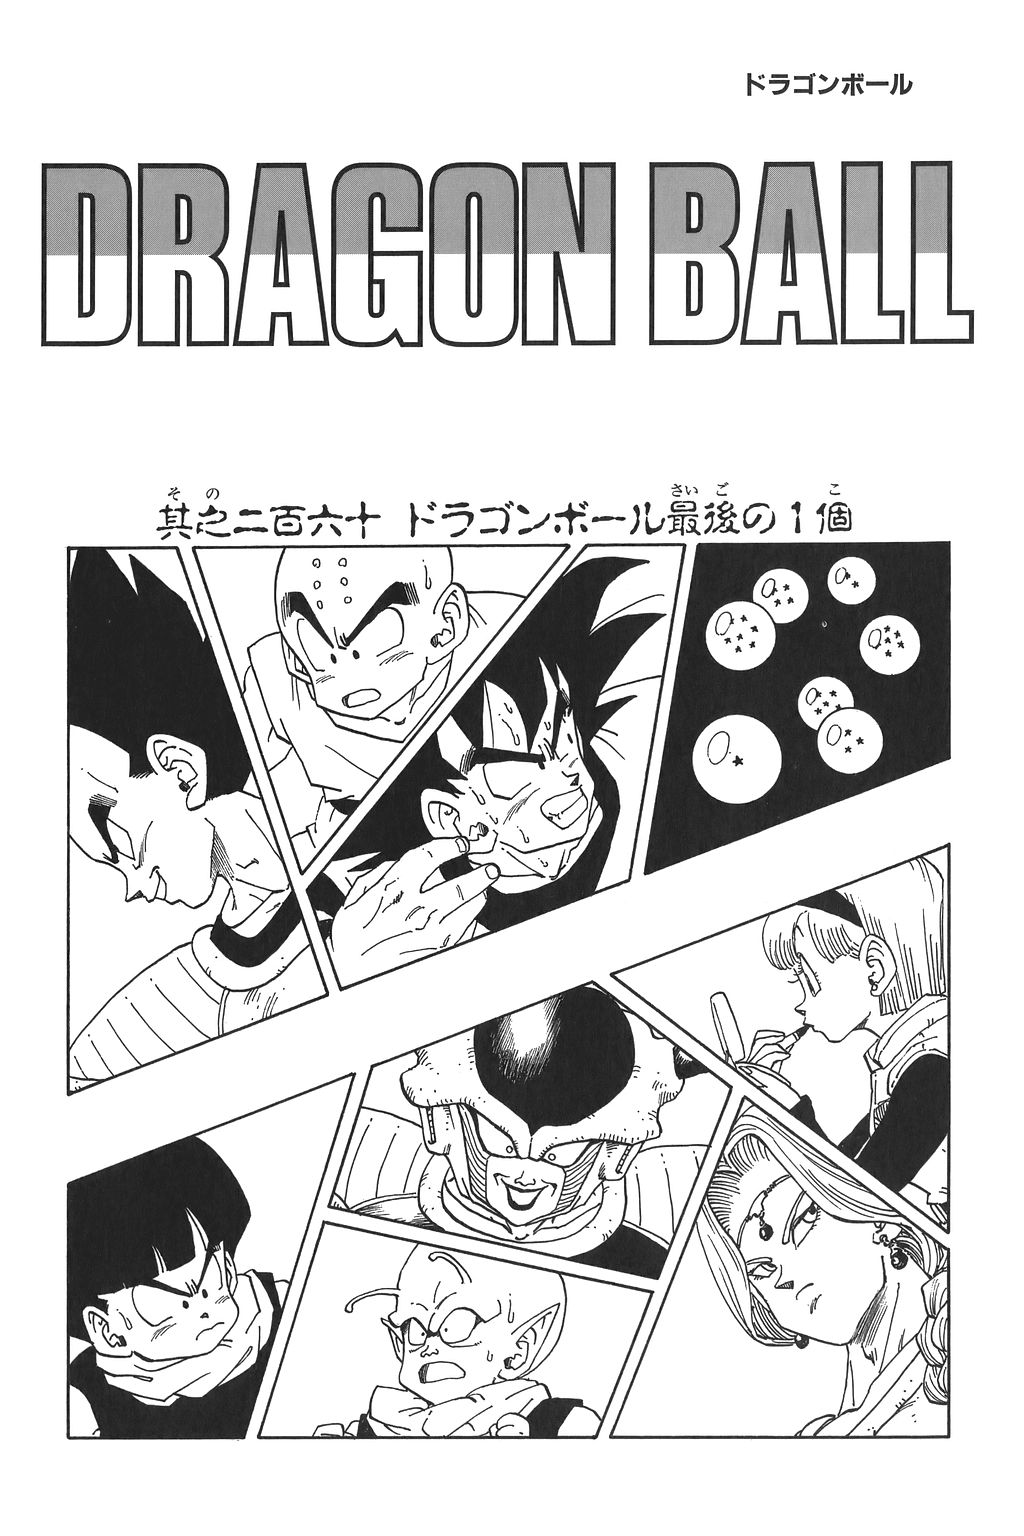 The Last Dragon Ball (manga chapter) - Dragon Ball Wiki